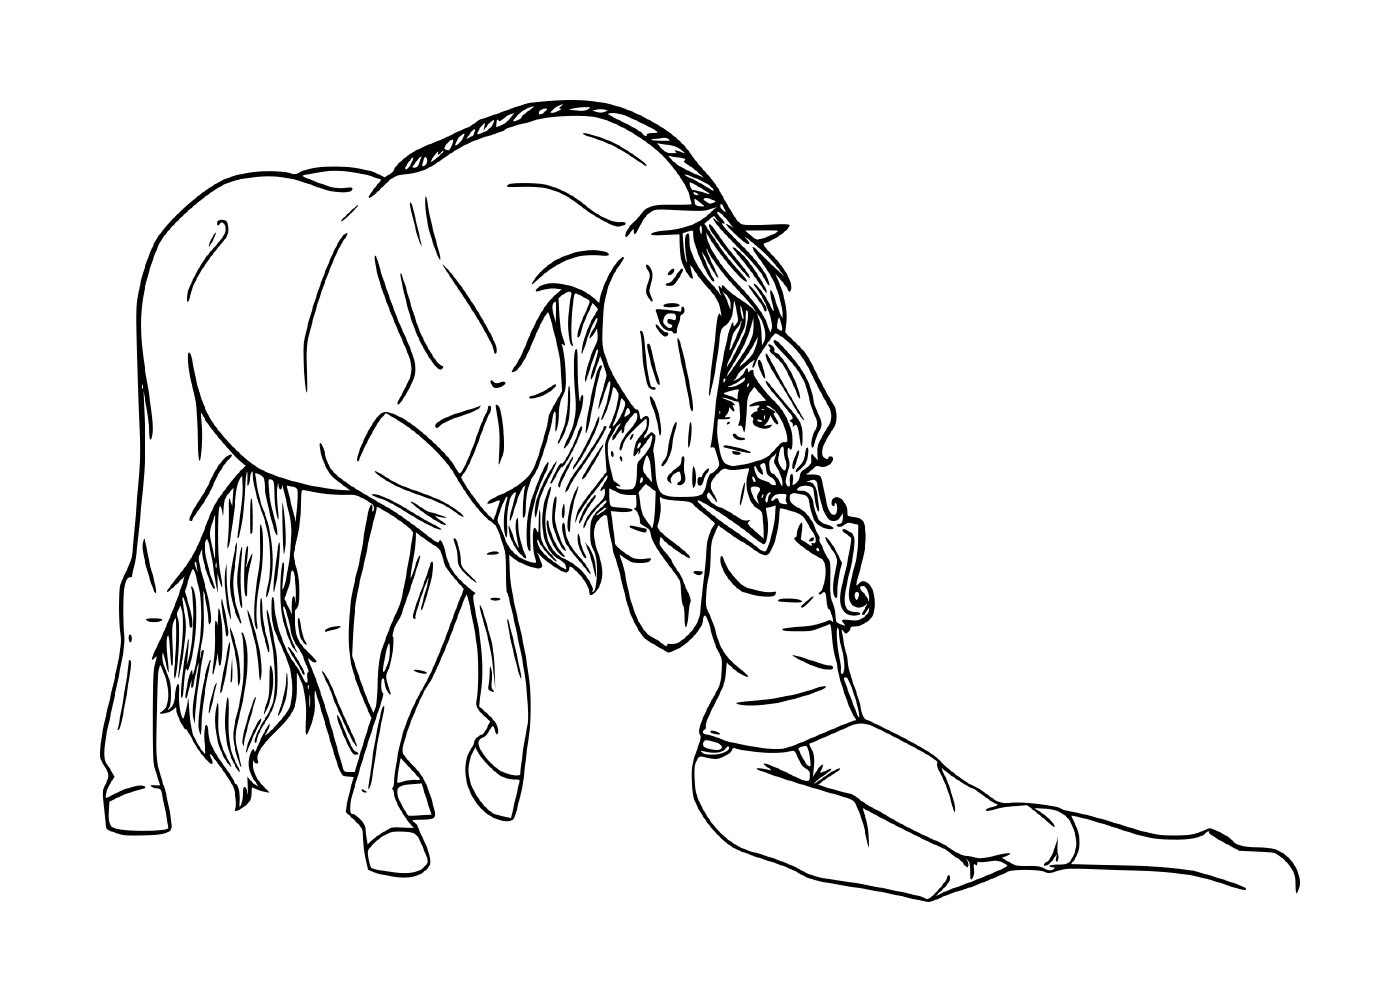  Junge Mädchen teilen eine besondere Verbindung mit ihrem Pferd 